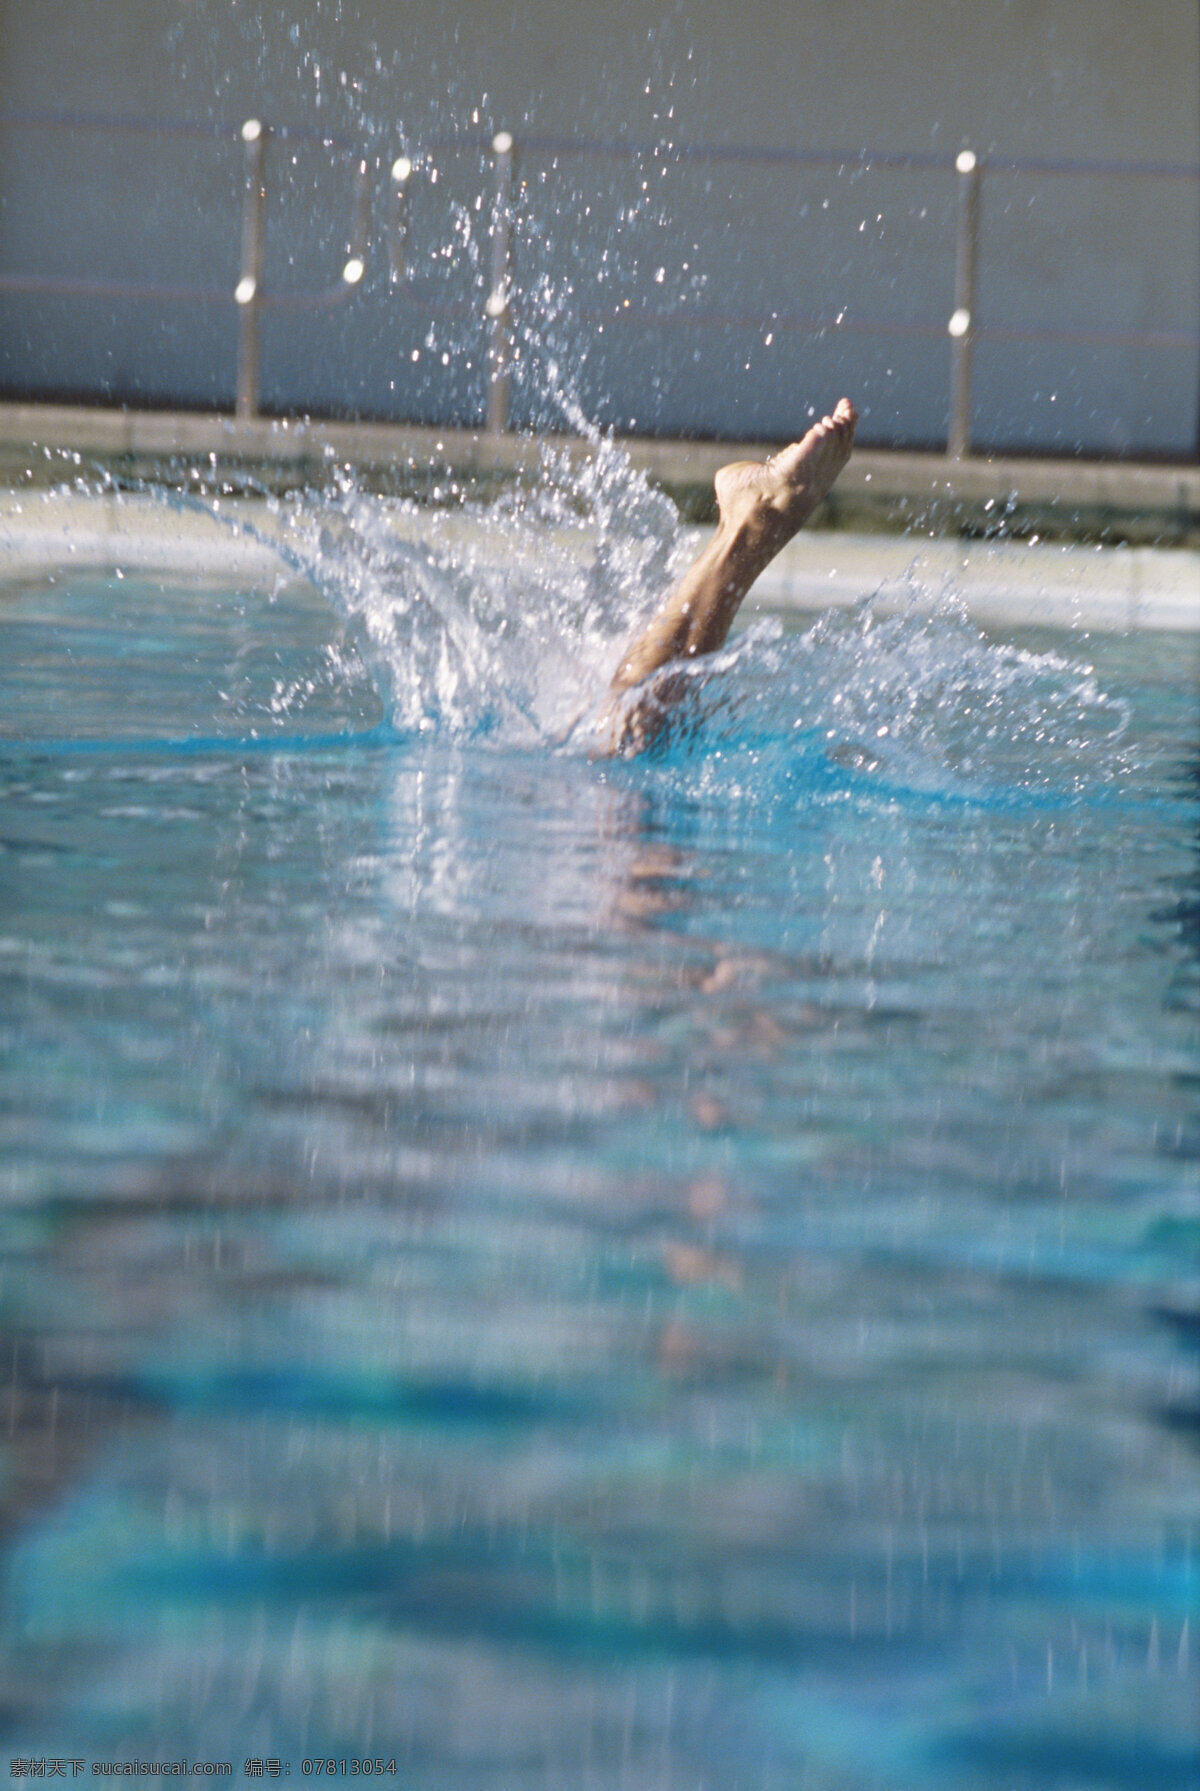 花样游泳 运动 人物 游泳 健身 健康生活 水花 运动员 体育运动 生活百科